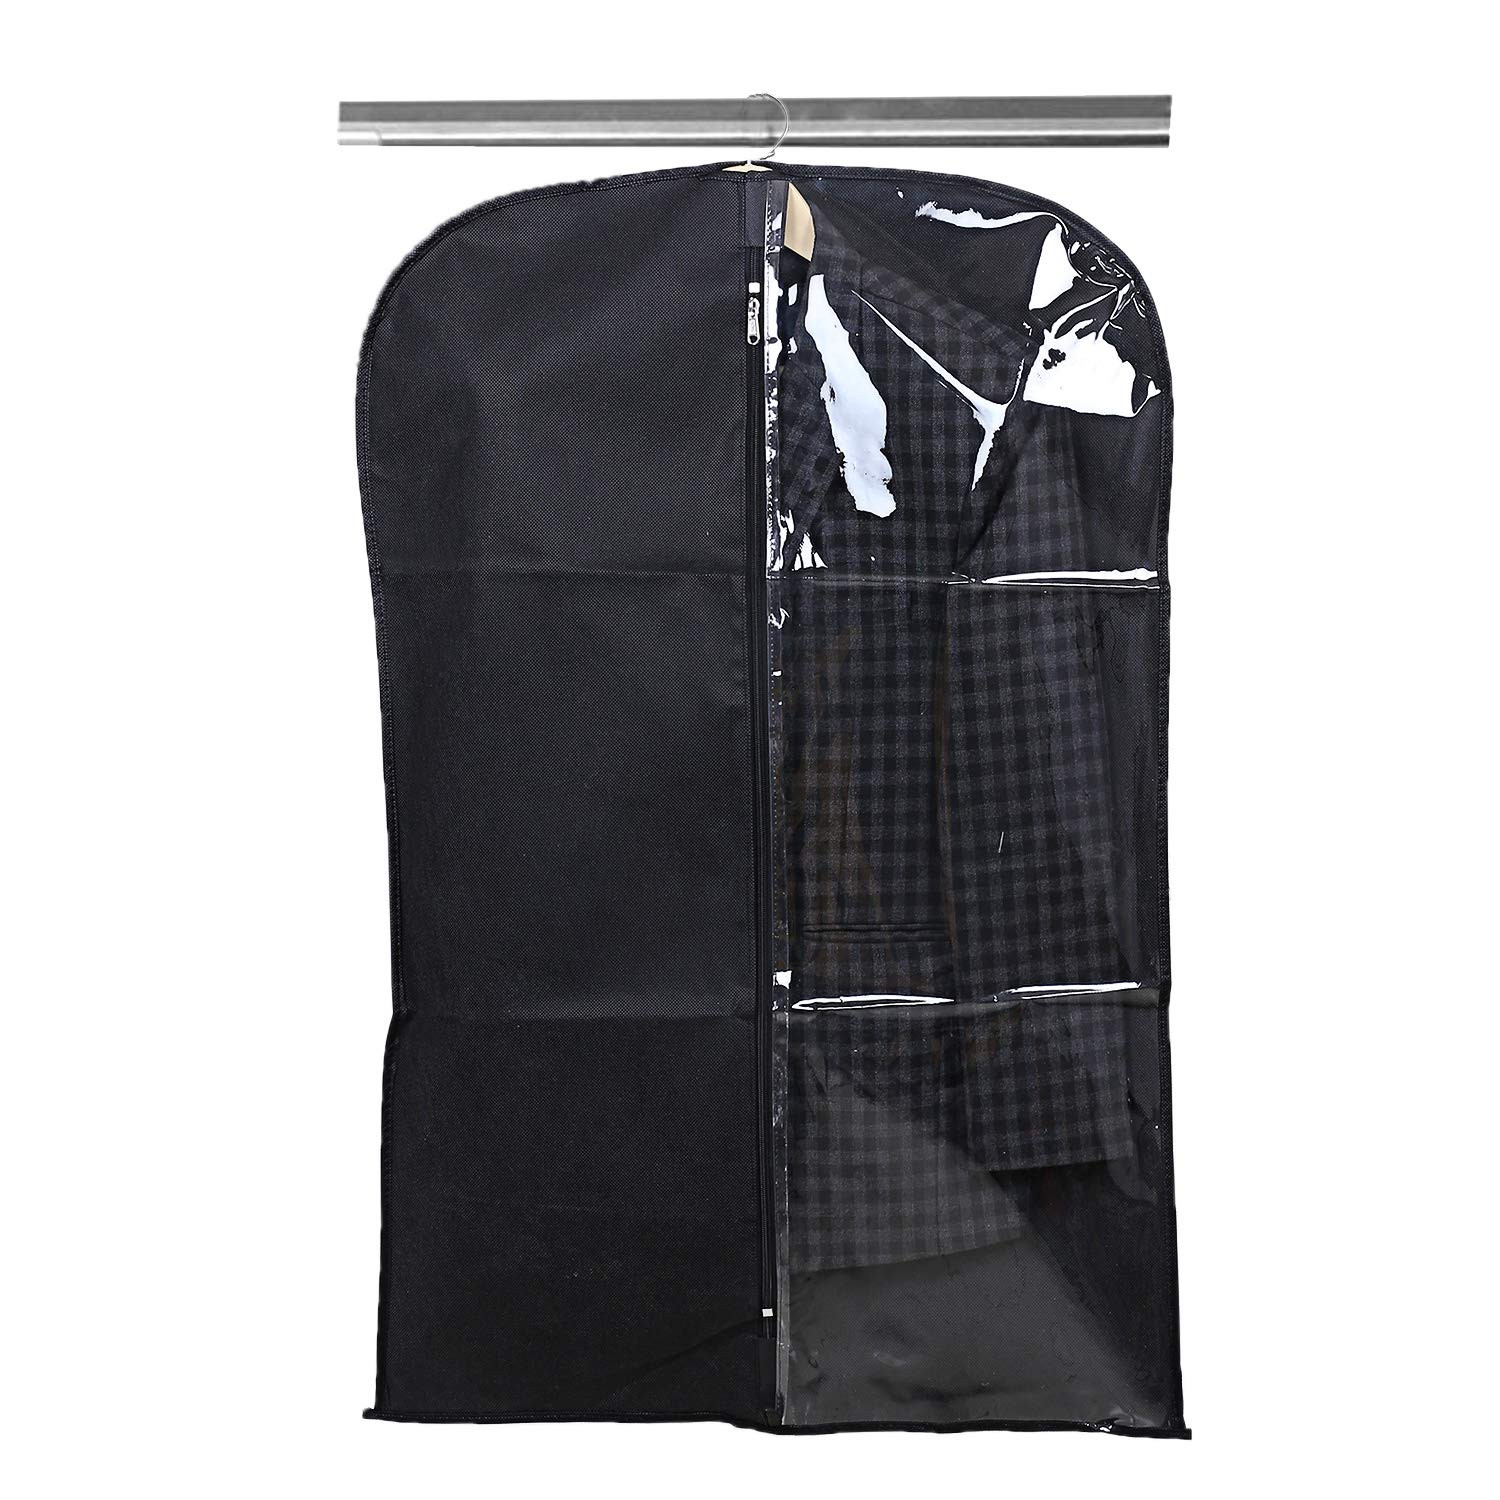 Kuber Industries Half Transparent Non Woven Men's Coat Blazer Suit Cover (Black & Maroon)  -CTKTC41485